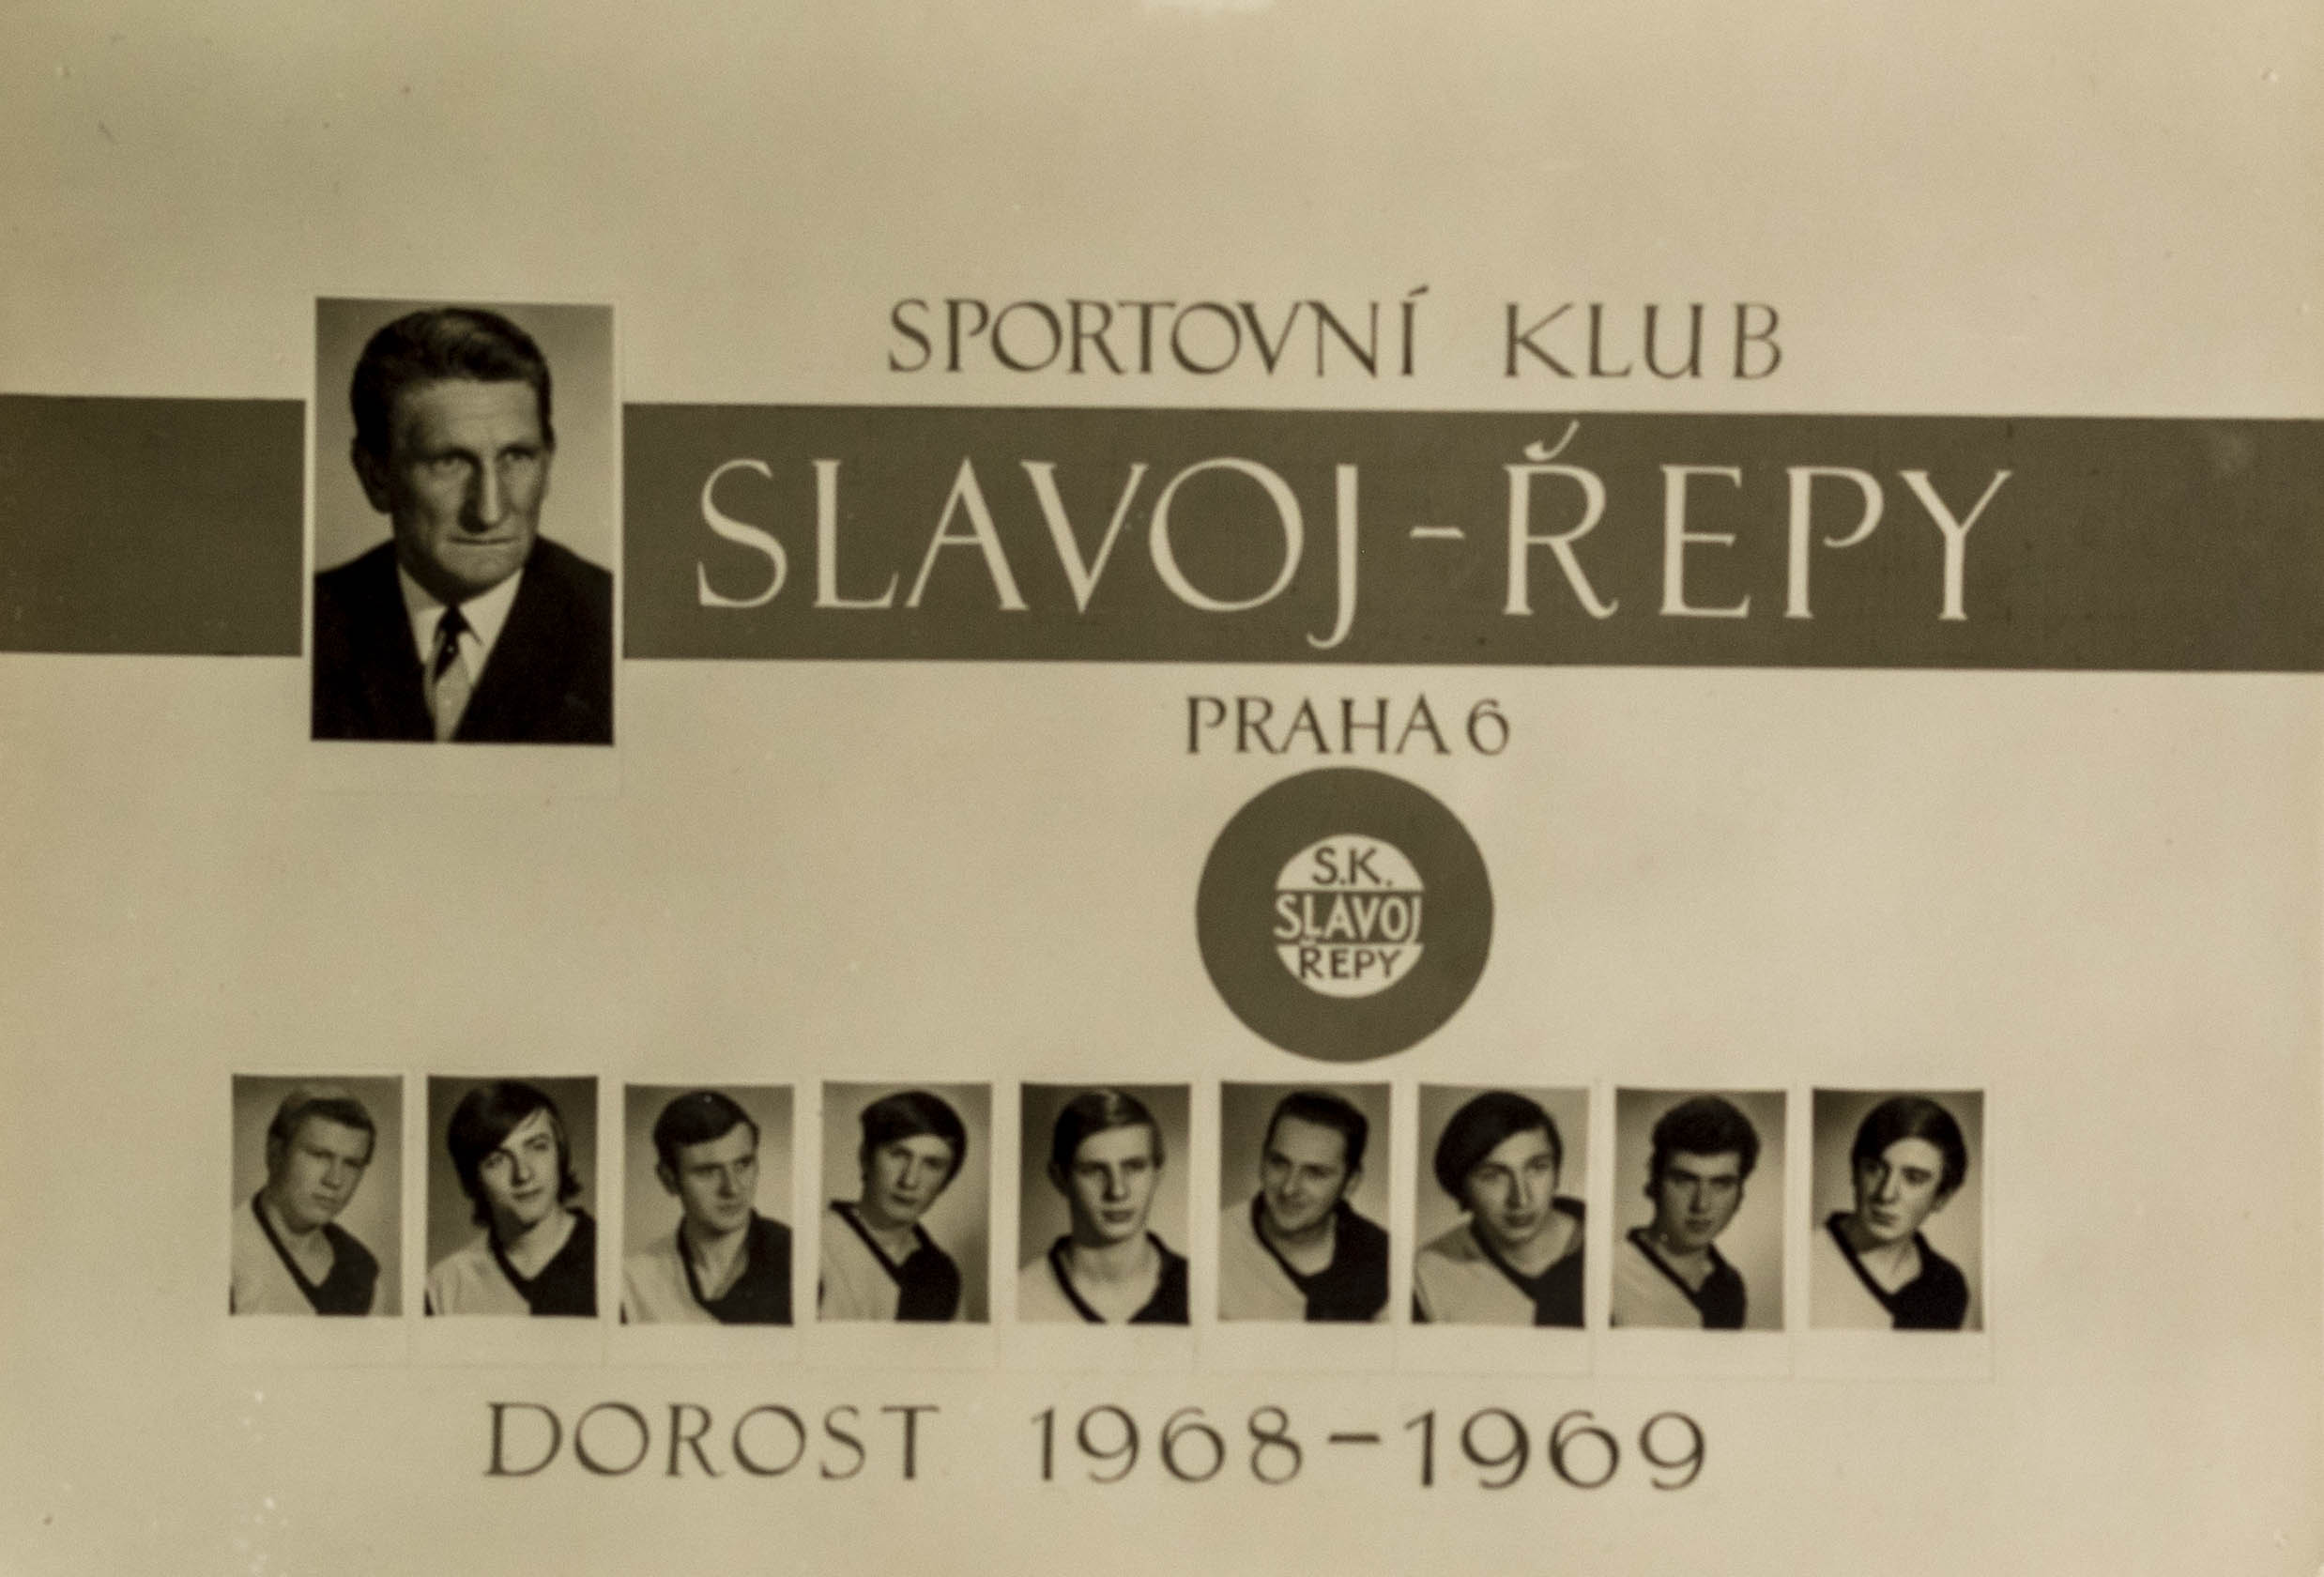 Foto - SK Slavoj Řepy, Praha 6, dorost 1968-1969